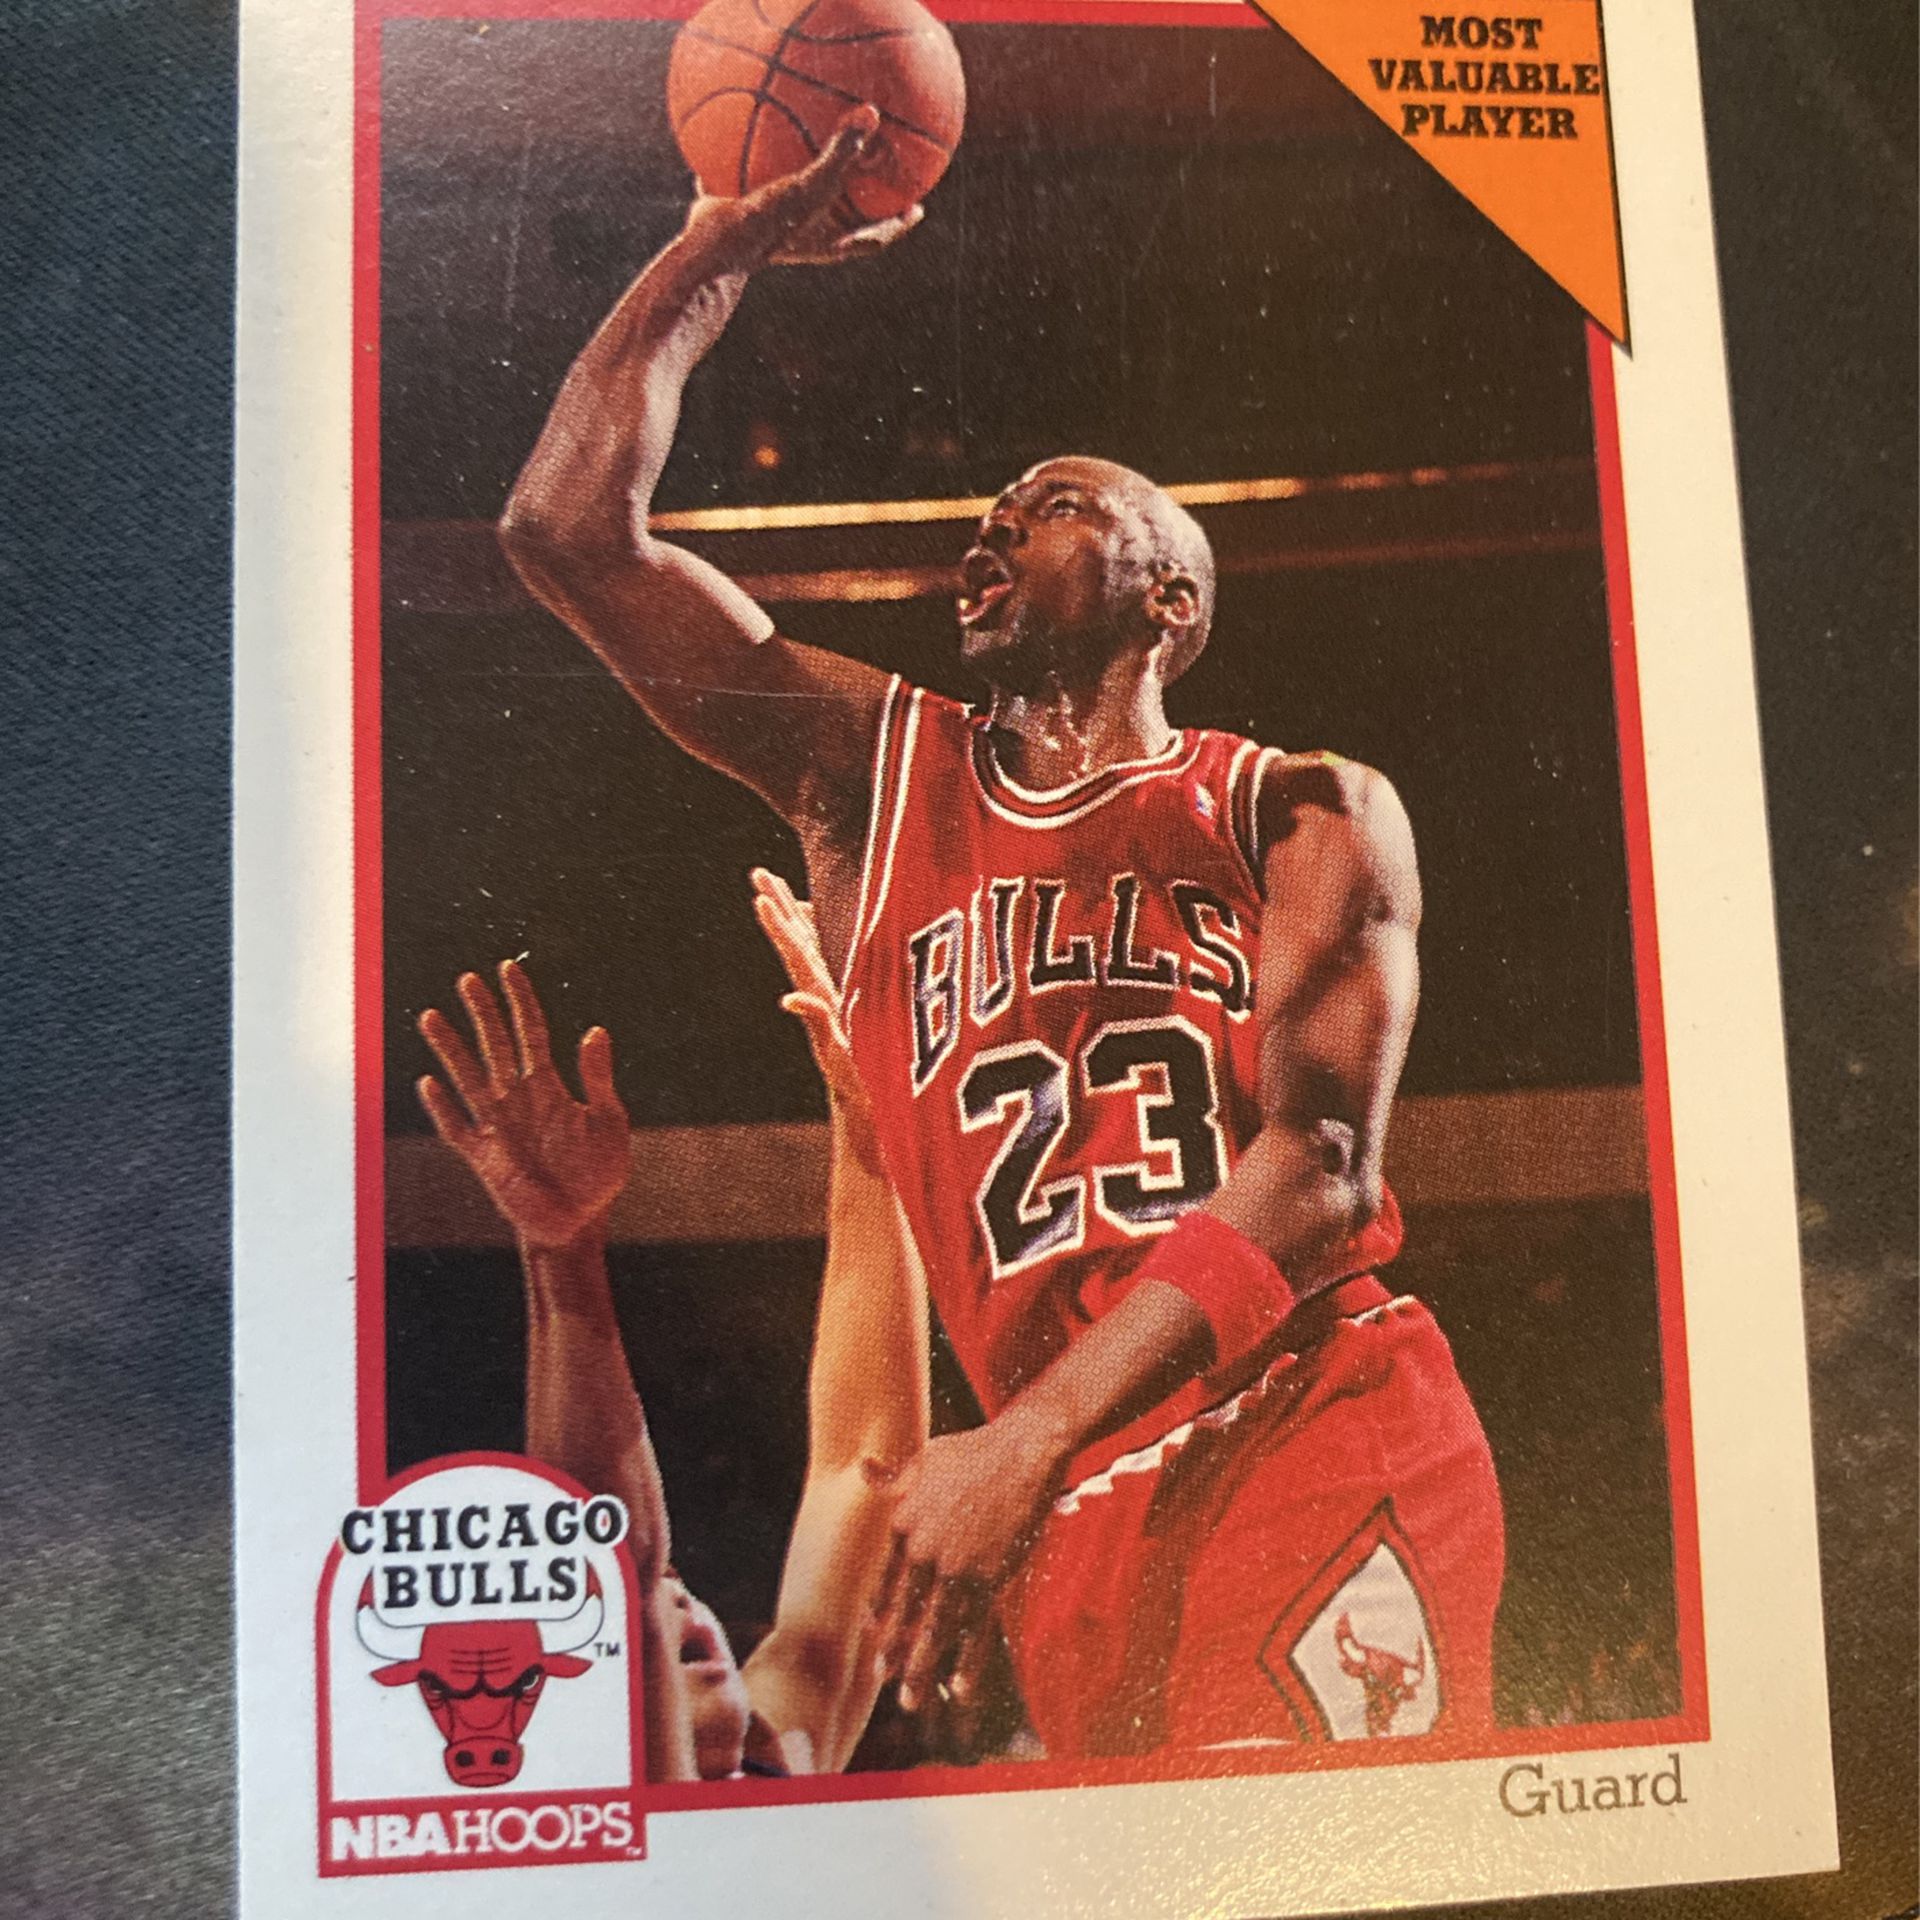 1991 Rare Jordan Card 